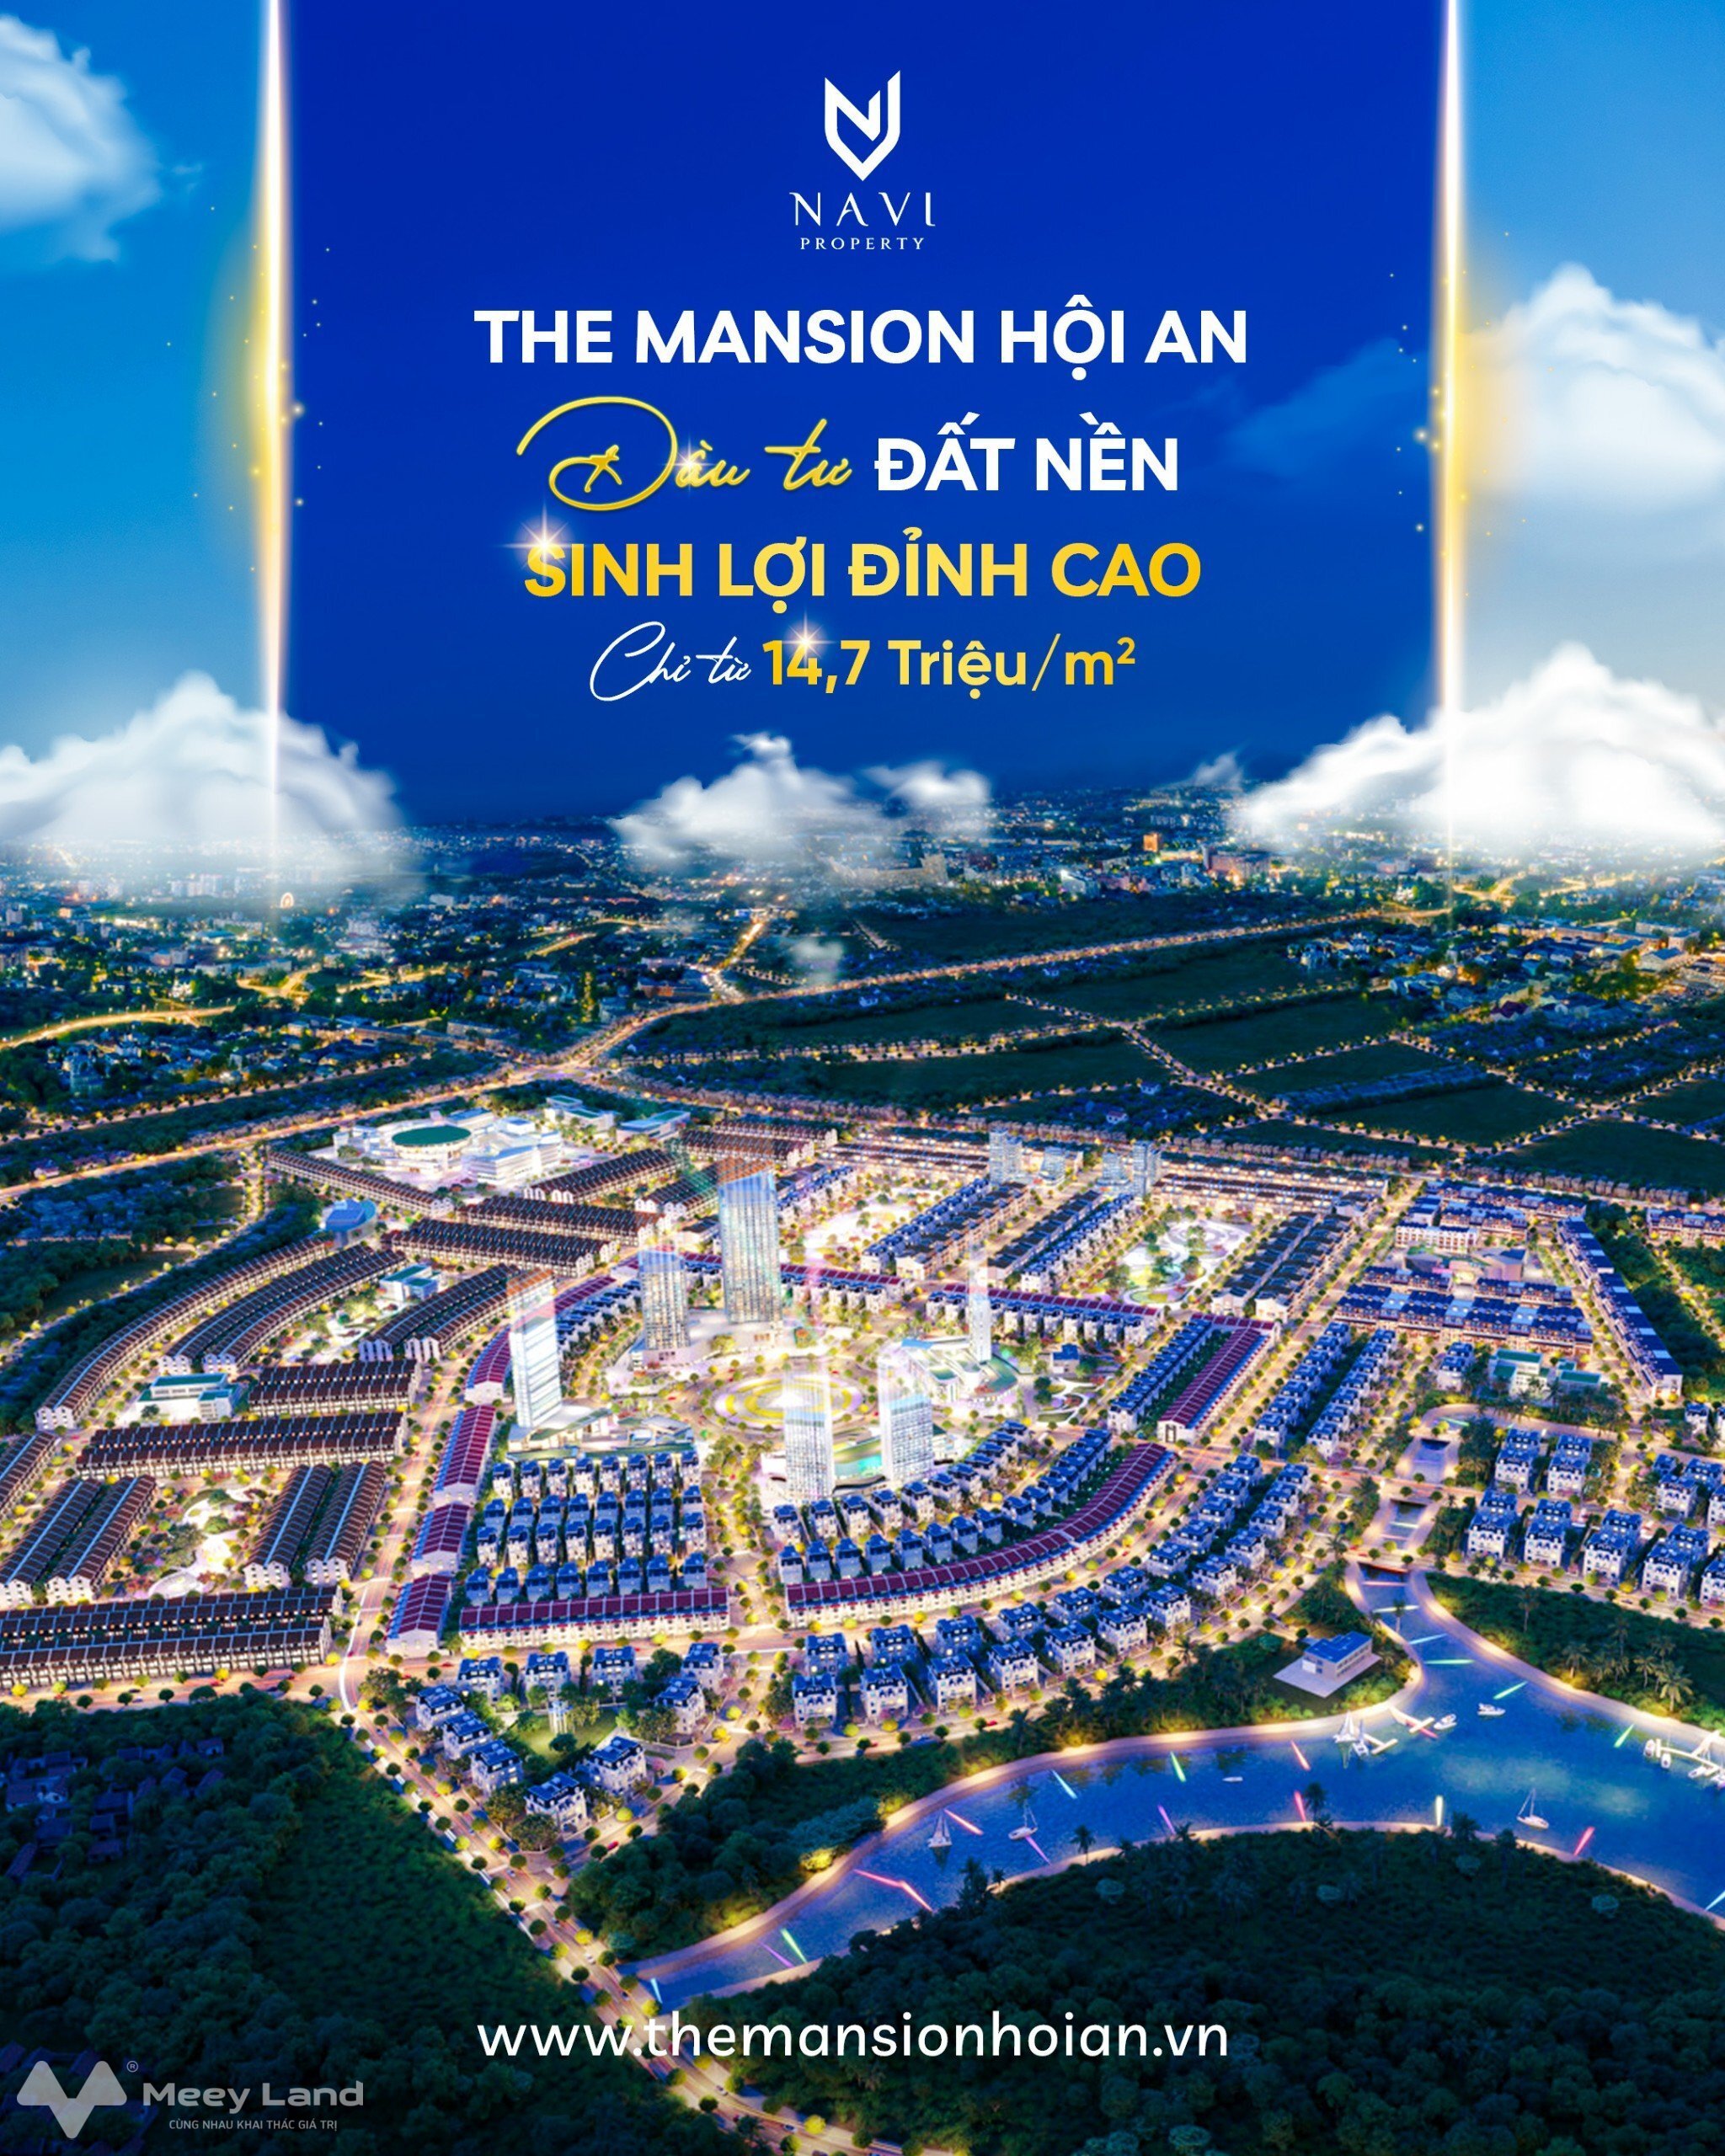 Mở bán phân khu trung tâm The Mansion Hội An - Khu phố chợ Lai Nghi (giai đoạn 2)-01